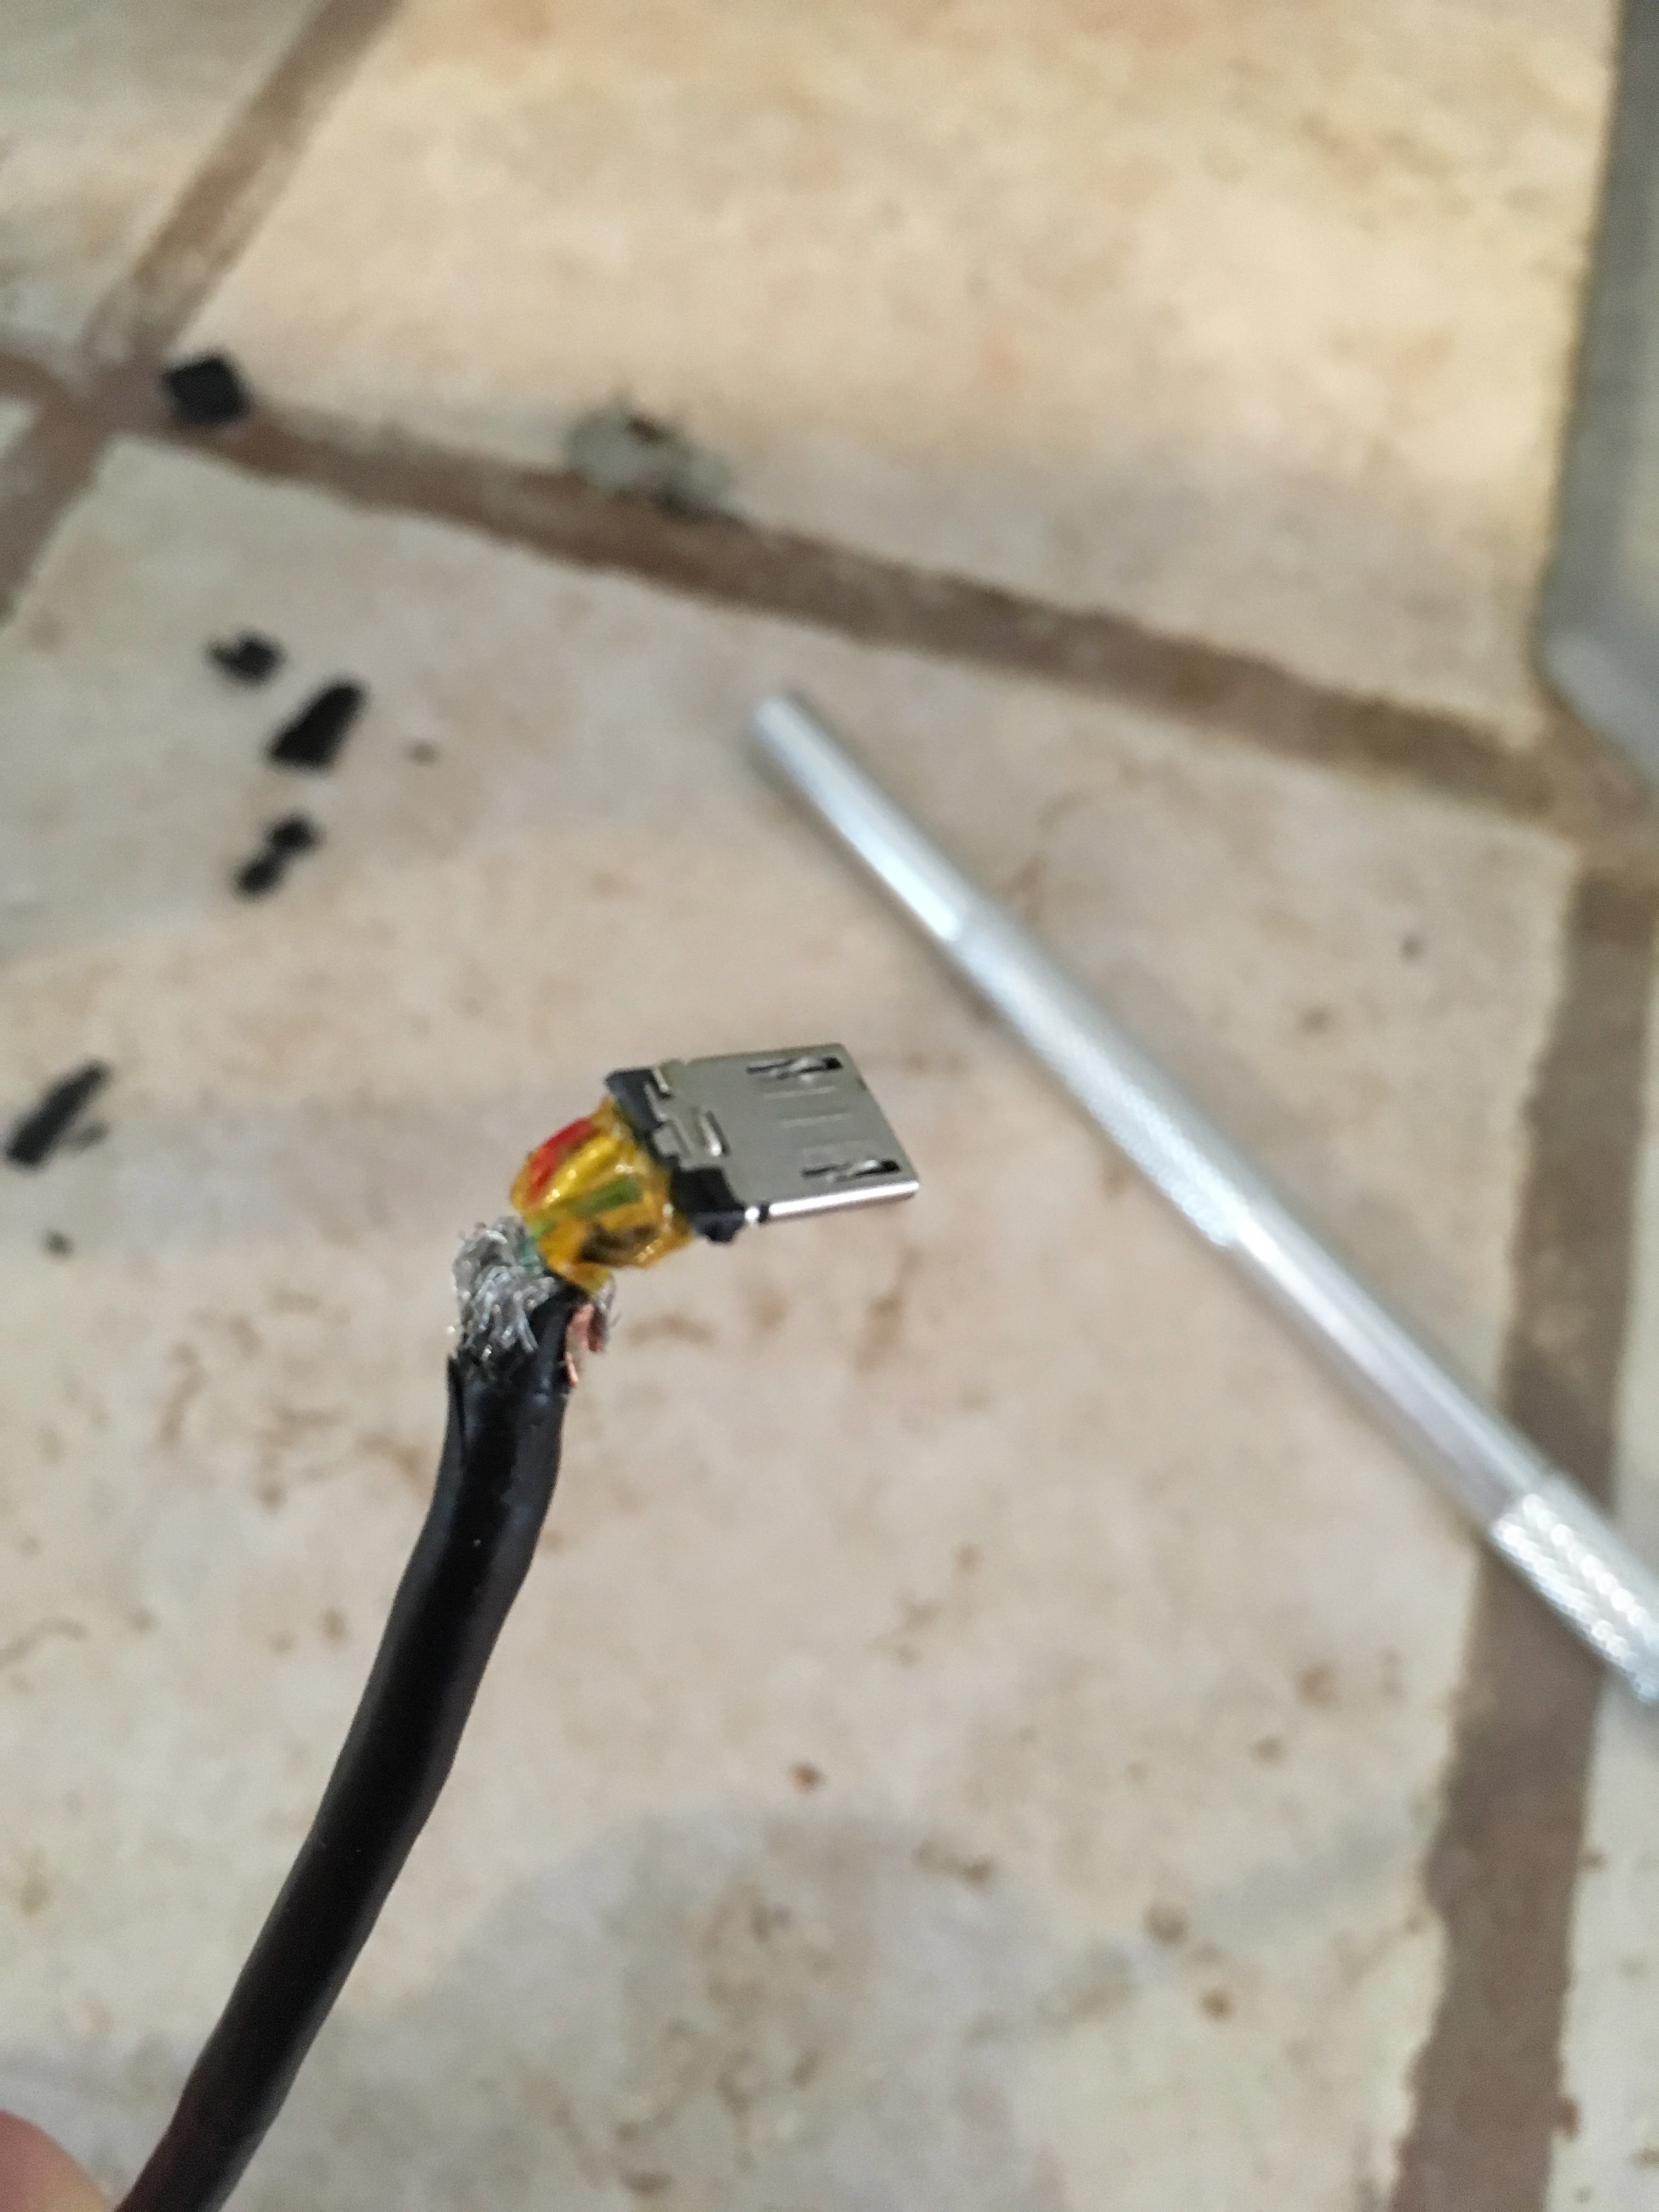 stripped USB wire